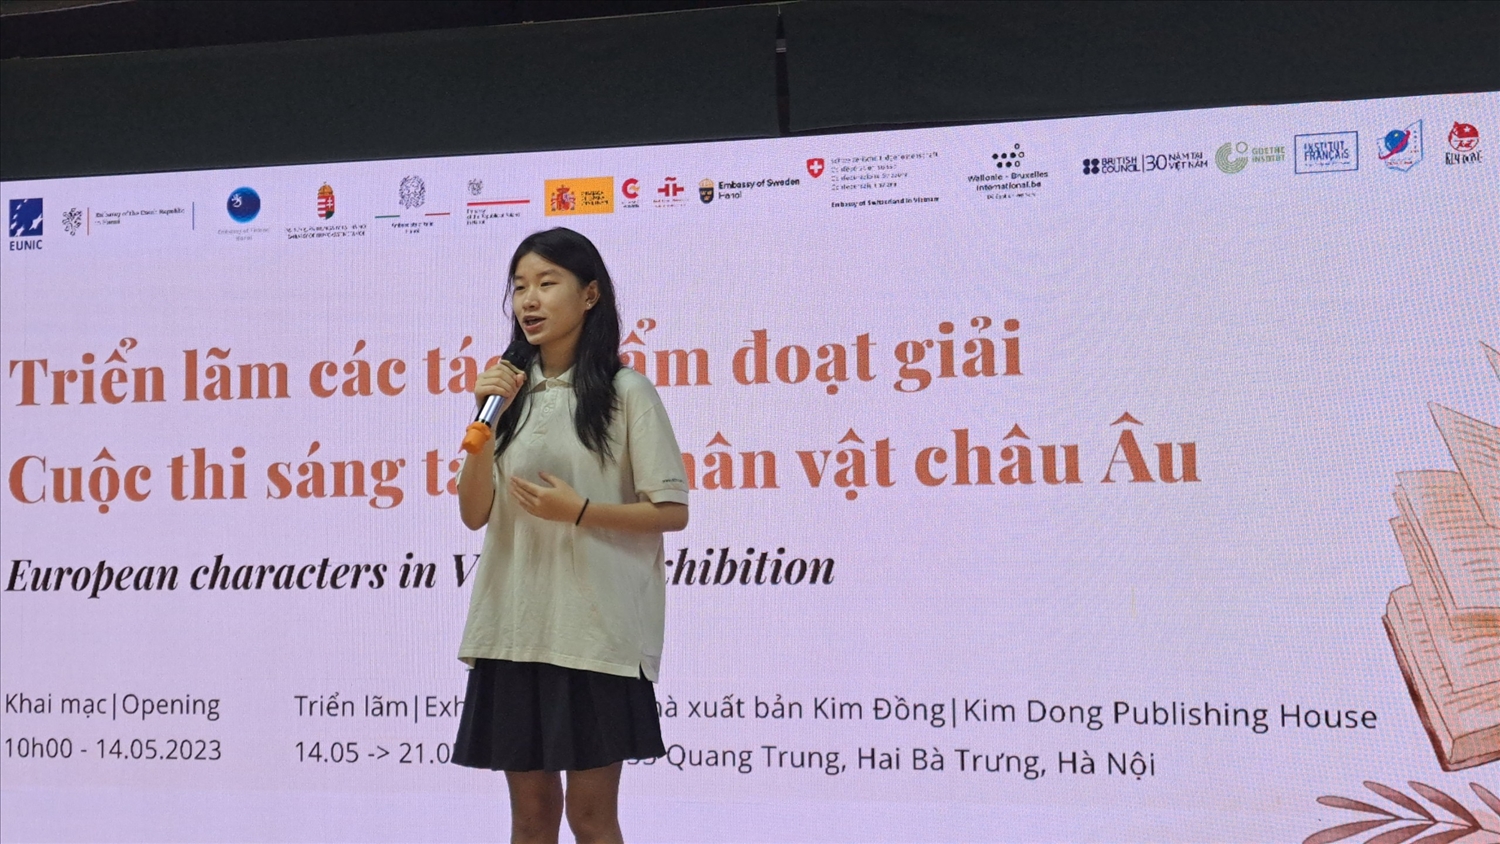 Em Đường Lê Tuệ Minh, học sinh trường THCS Nguyễn Tất Thành phát biểu cảm xúc khi nhận được giải thưởng trong cuộc thi